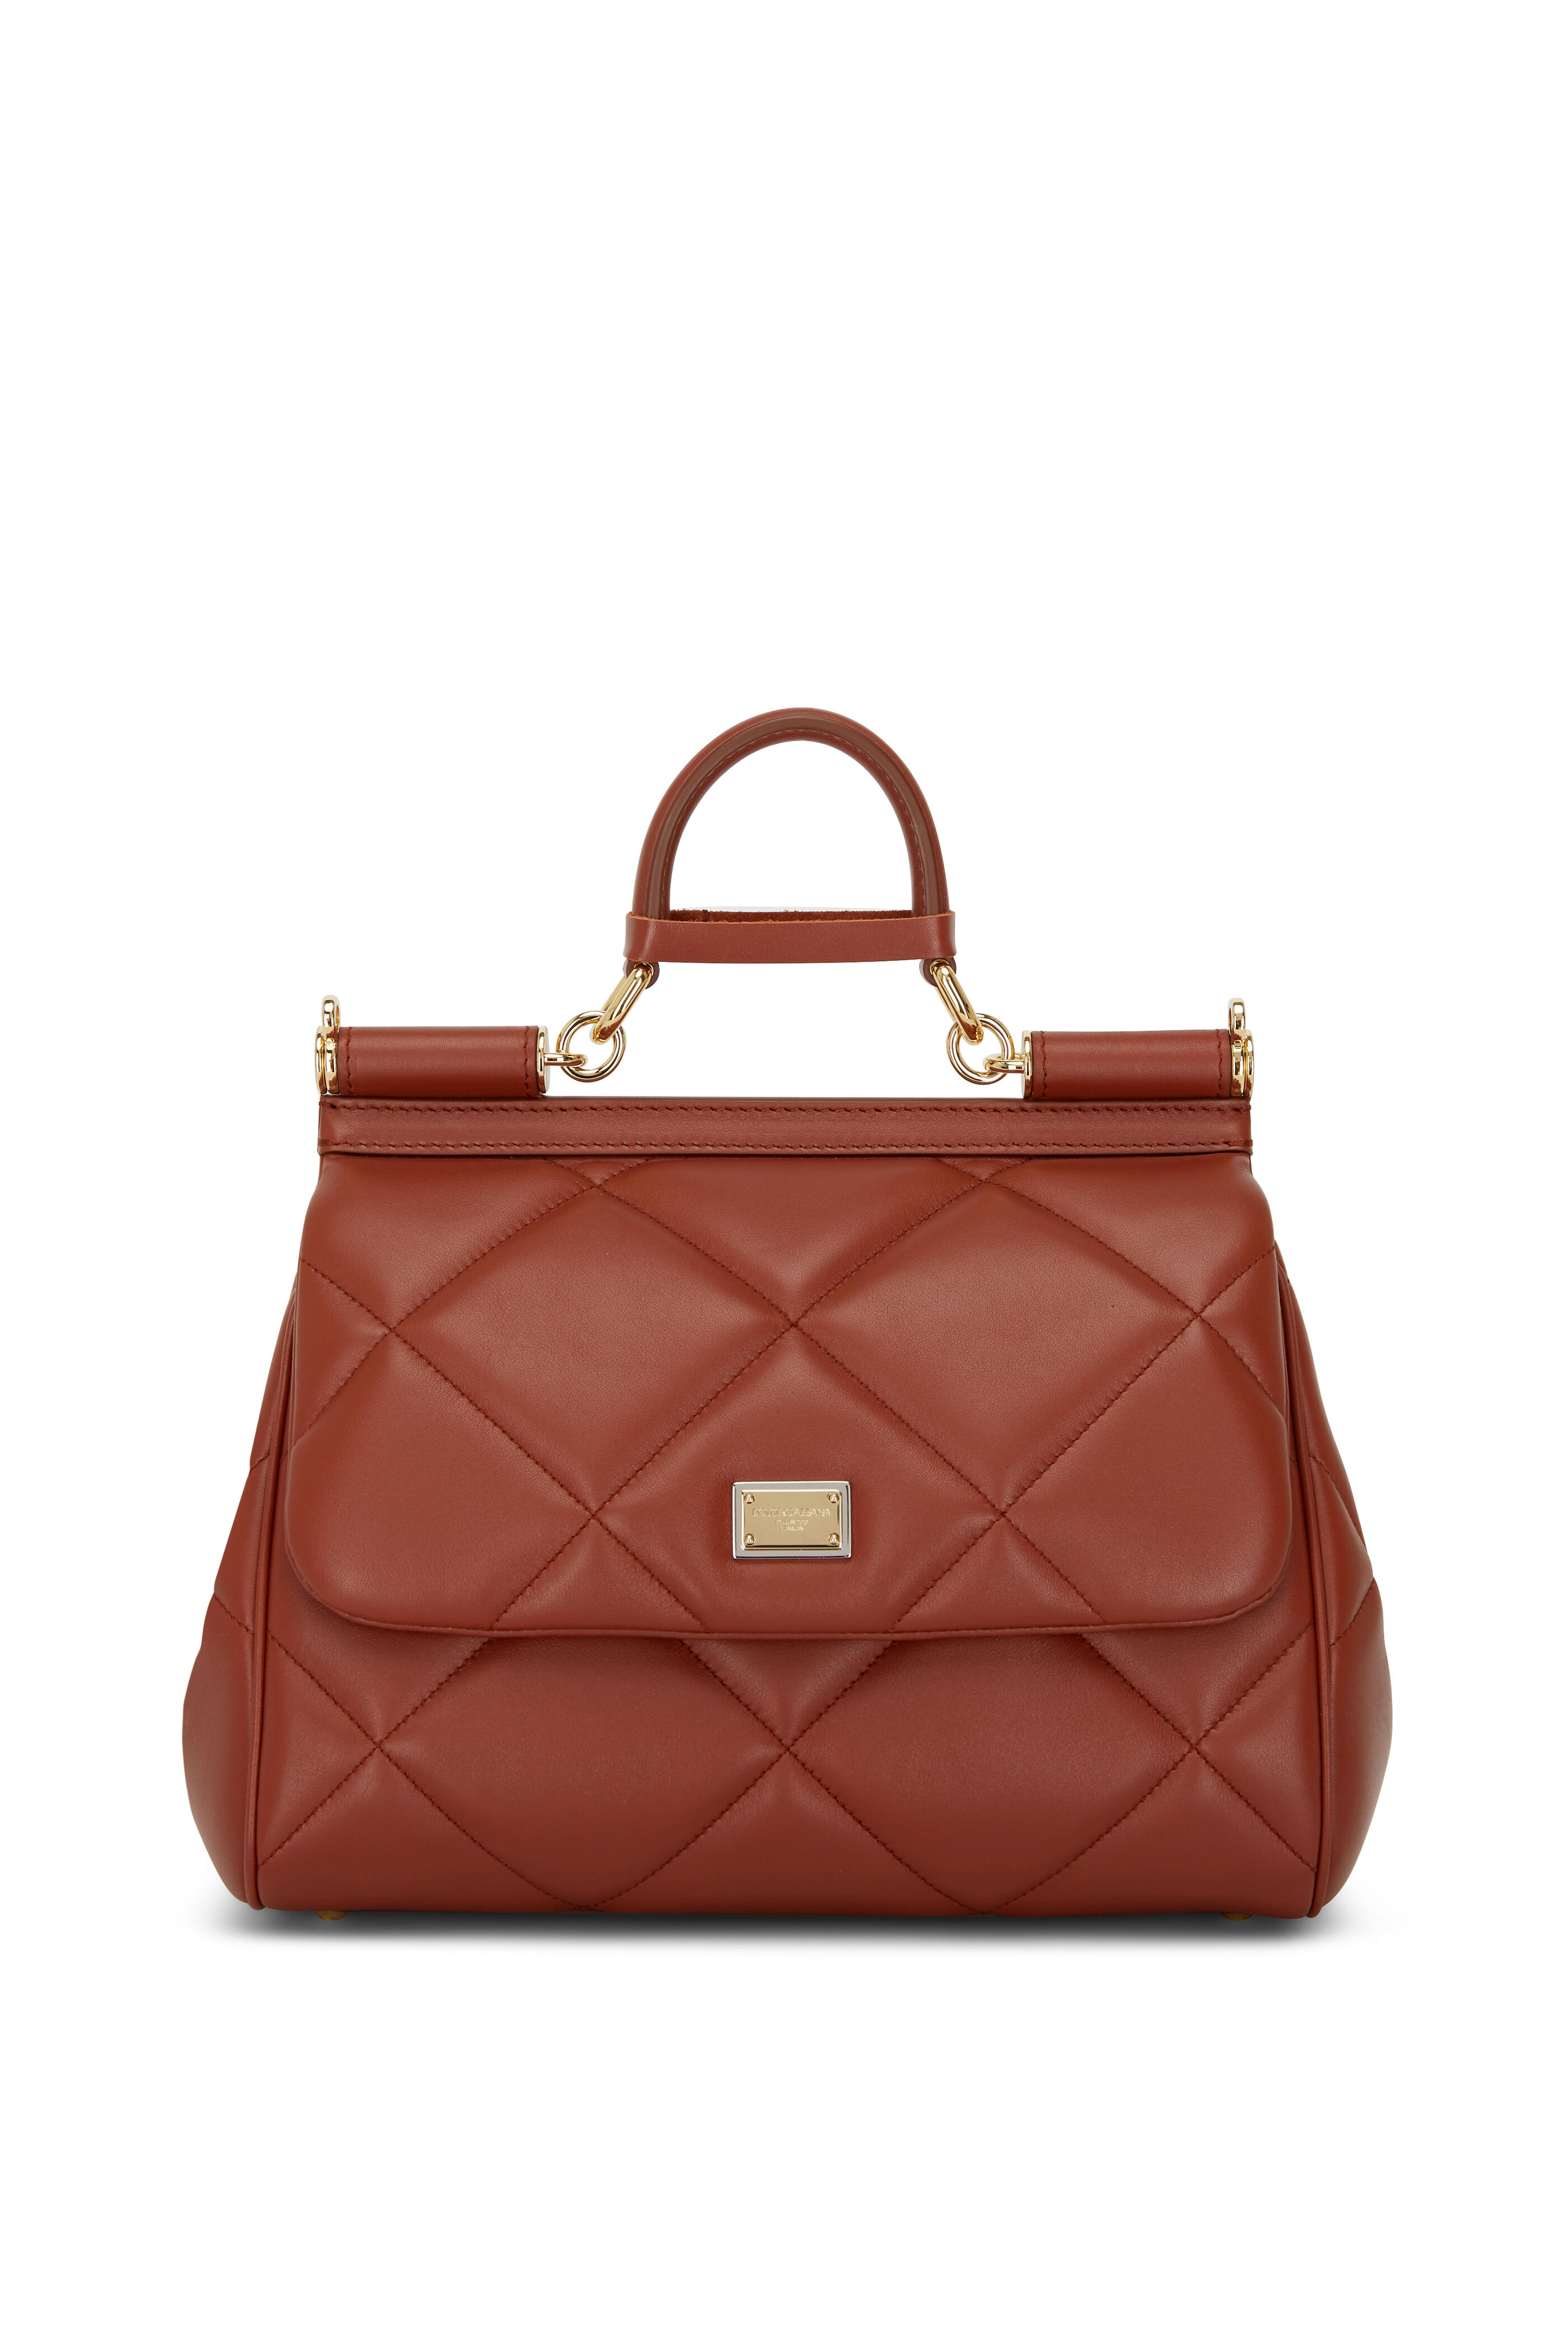 Valentino Small Vsling Grainy Calfskin Handbag - Neutrals Handle Bags,  Handbags - VAL326582